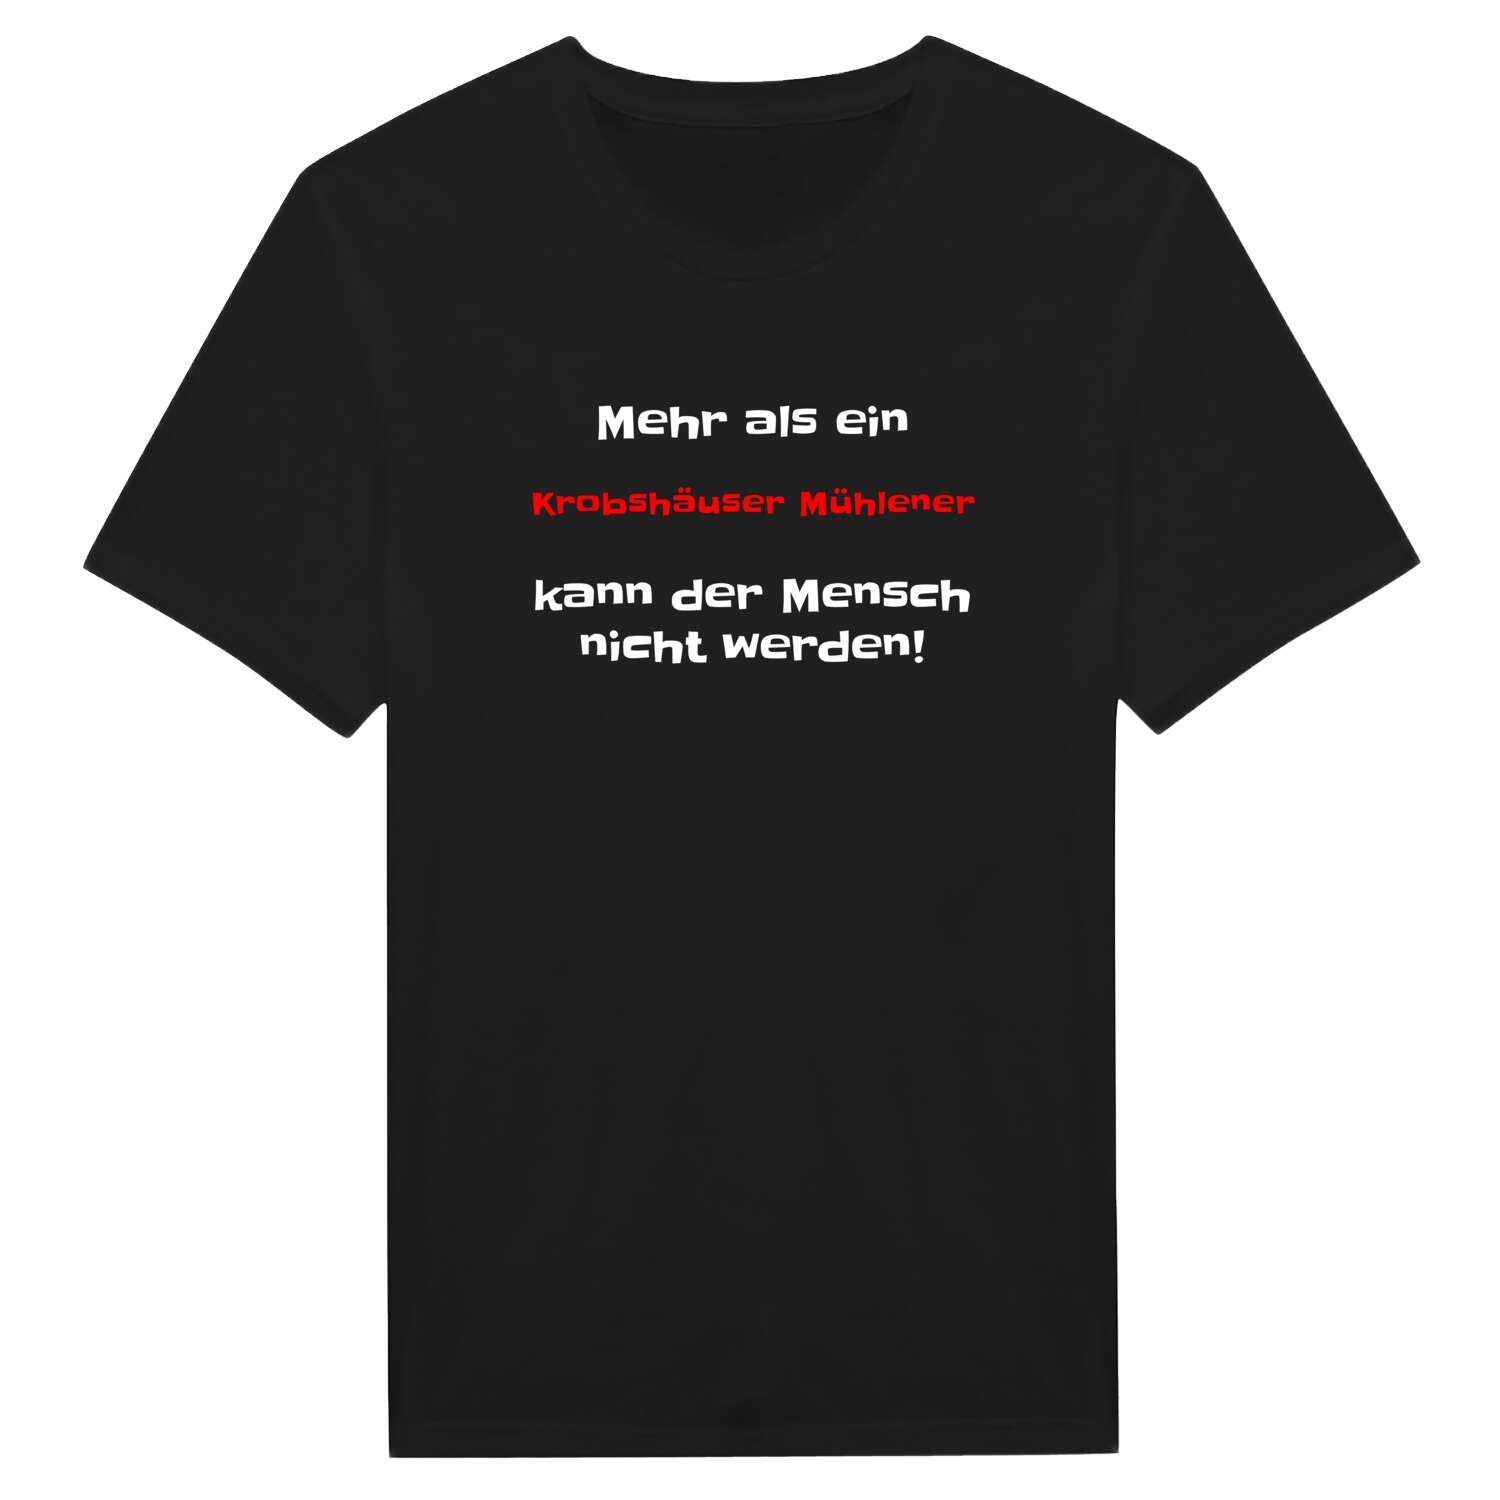 Krobshäuser Mühle T-Shirt »Mehr als ein«